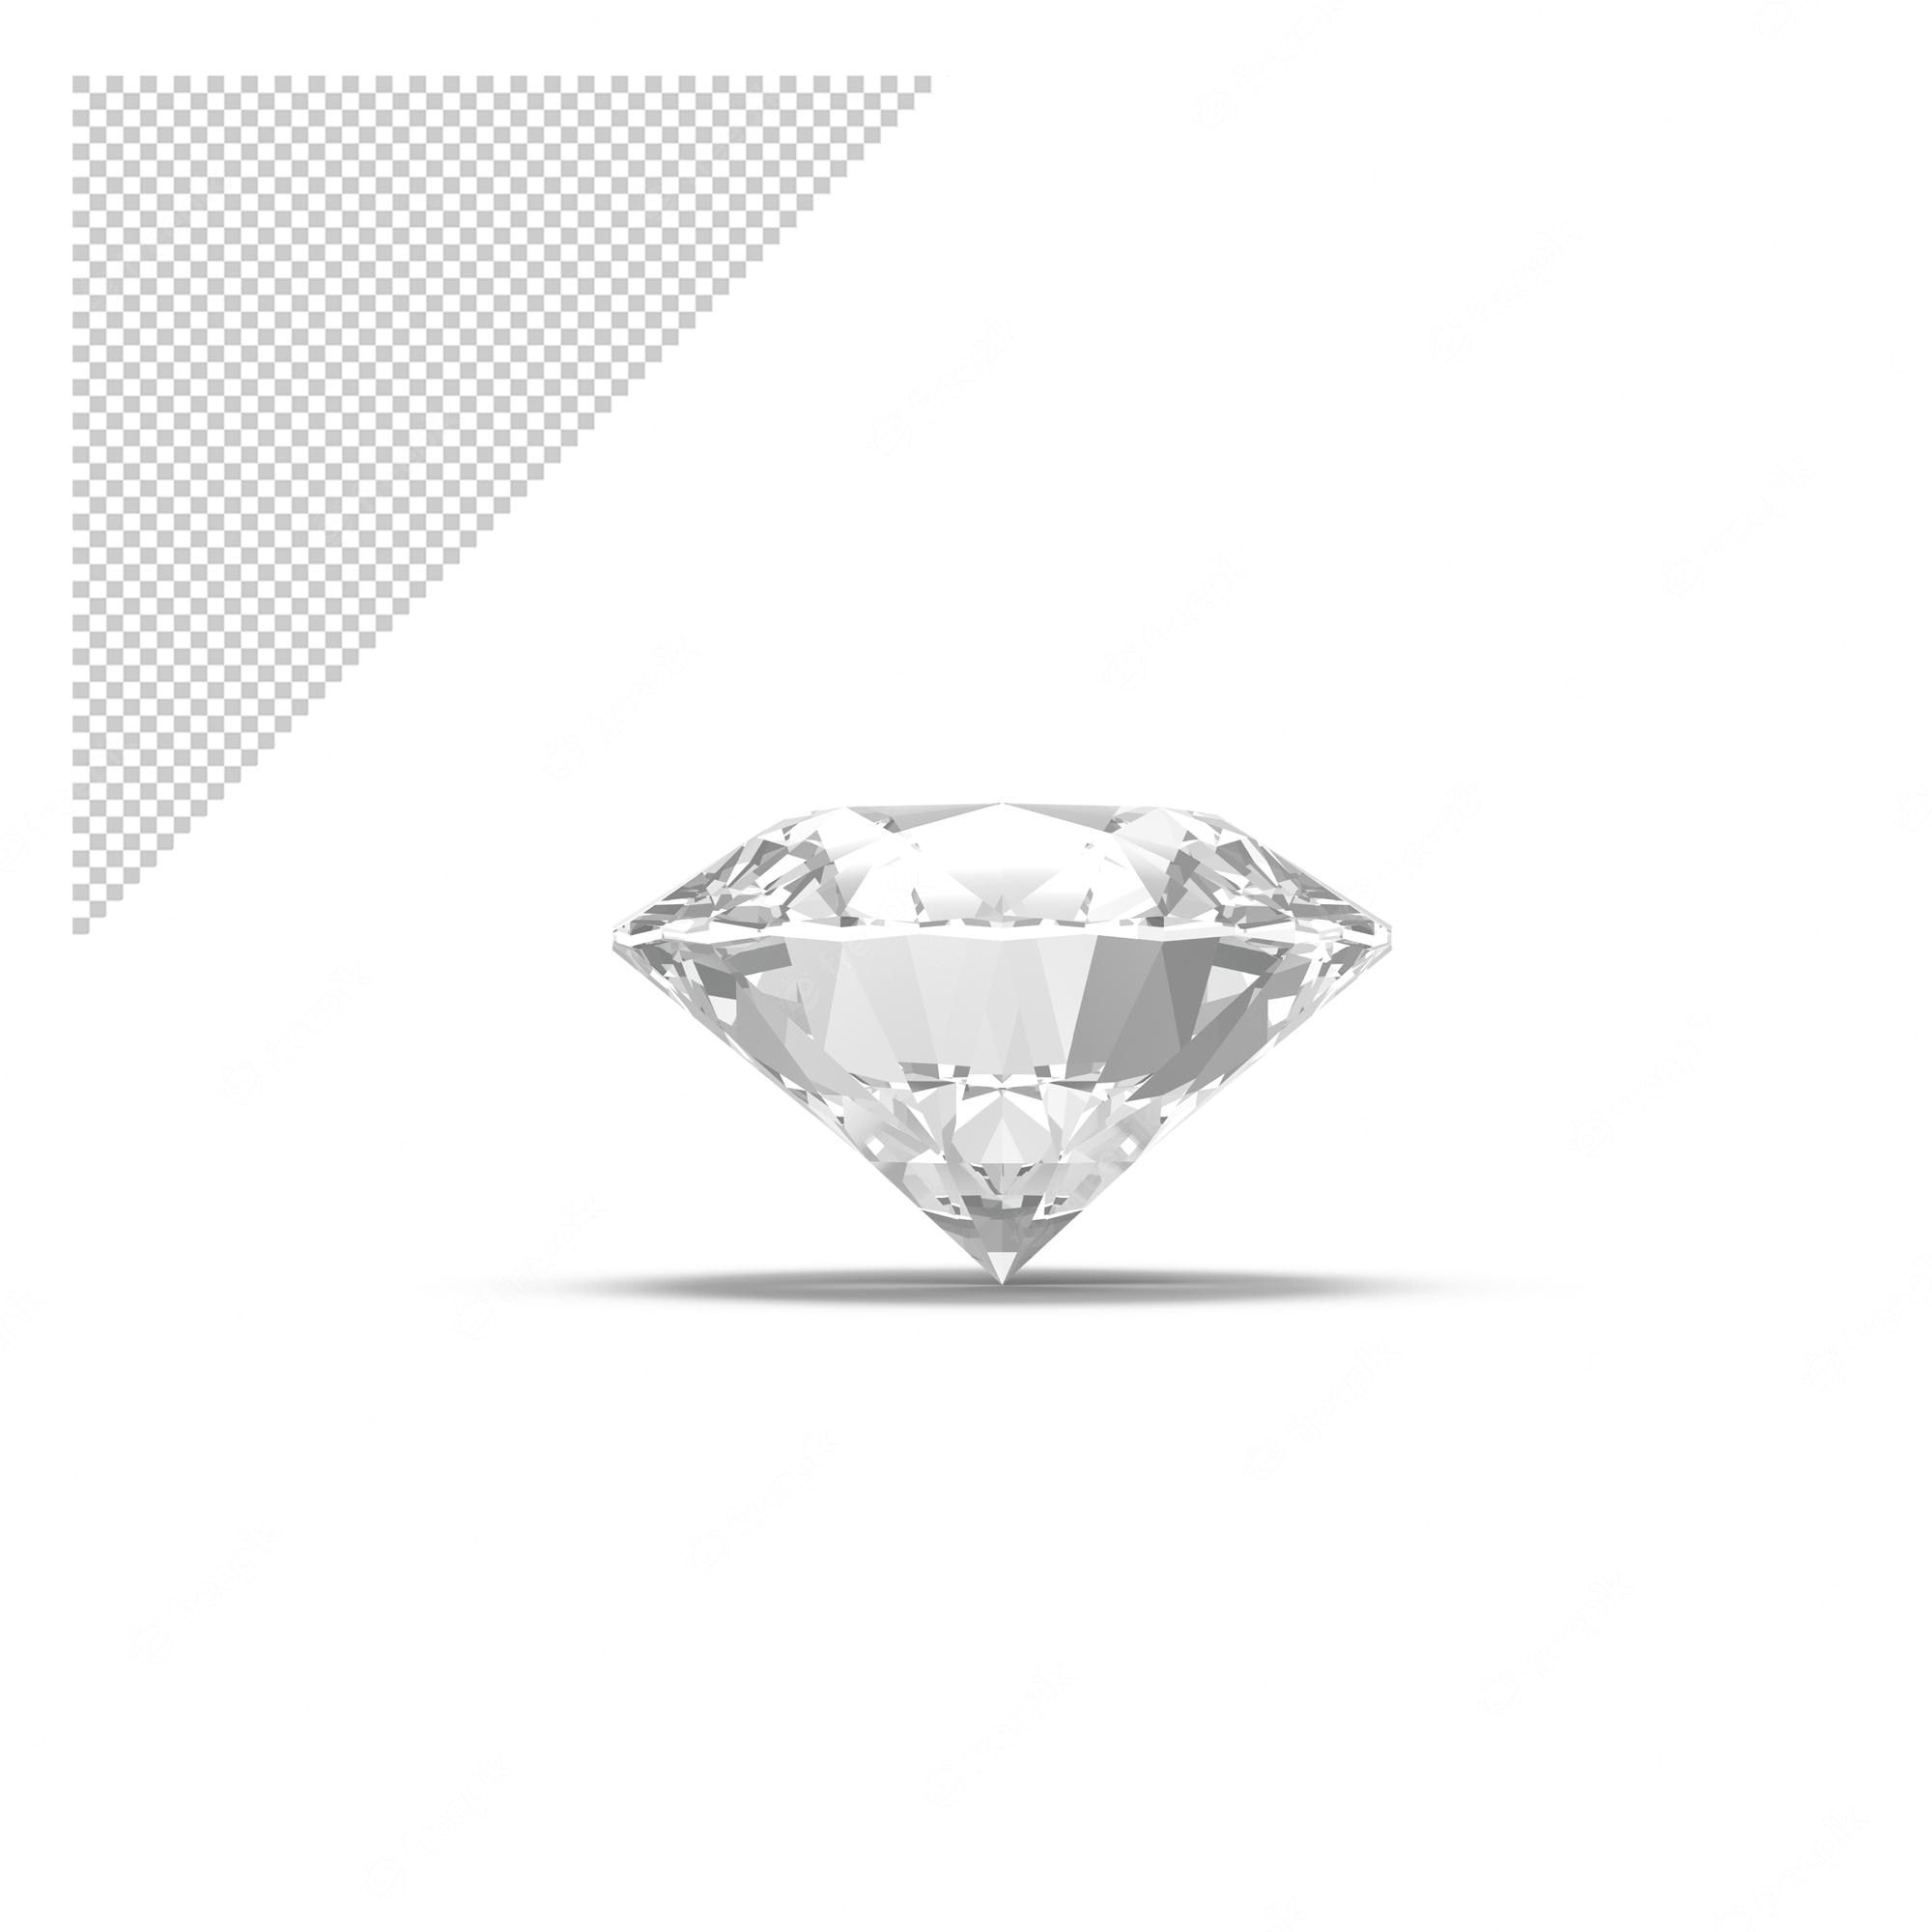 Diamond on white background - Diamond